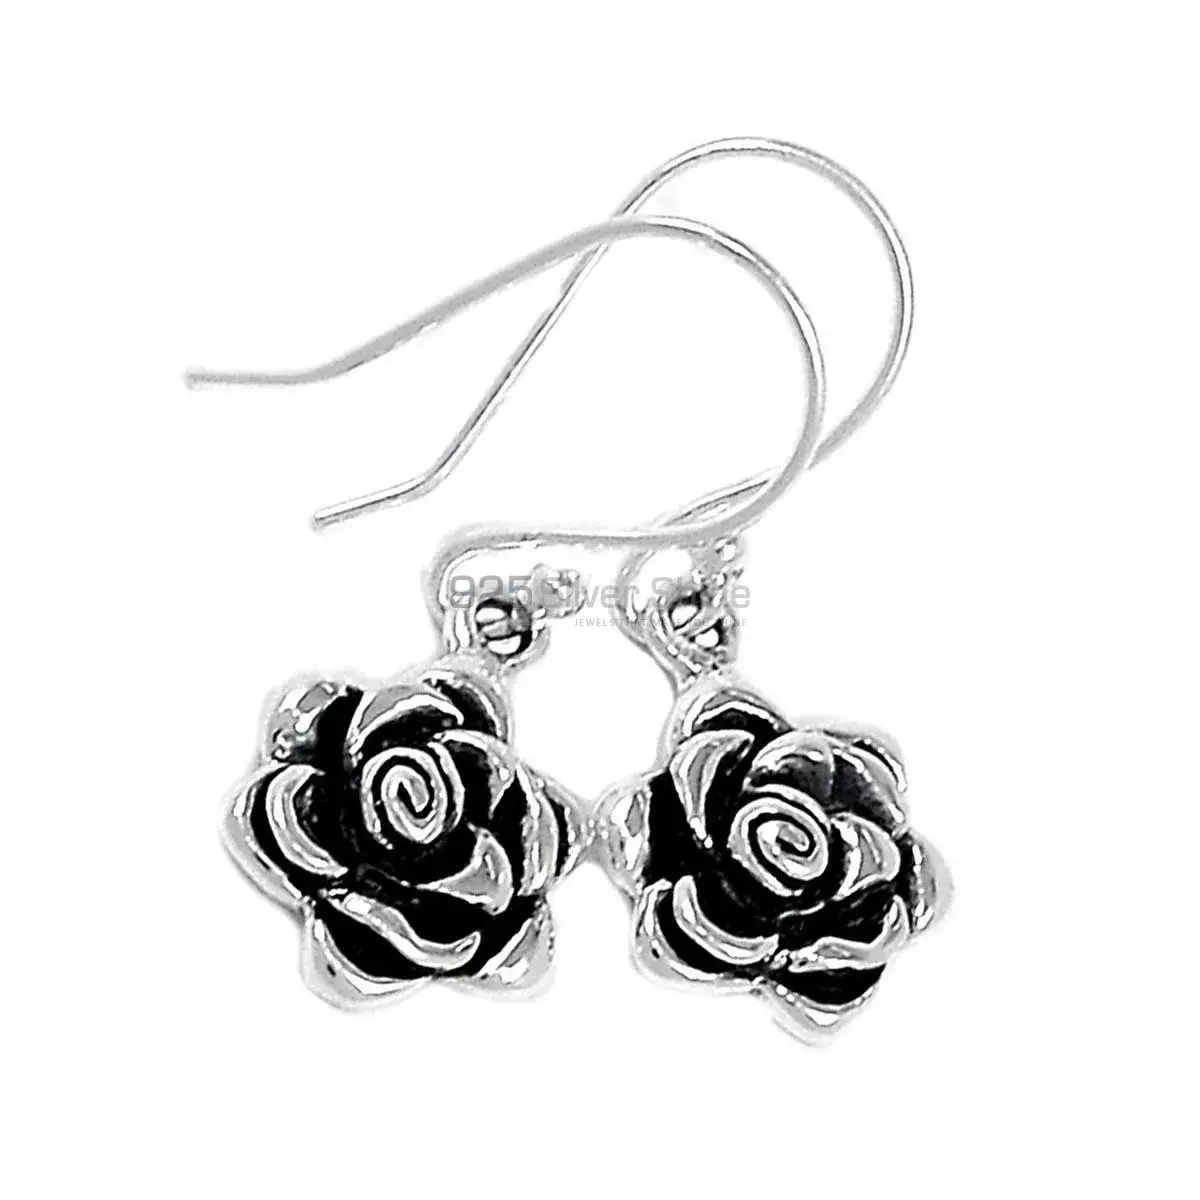 Oxidized Flower Earrings In 925 Sterling Silver 925SE2896_2